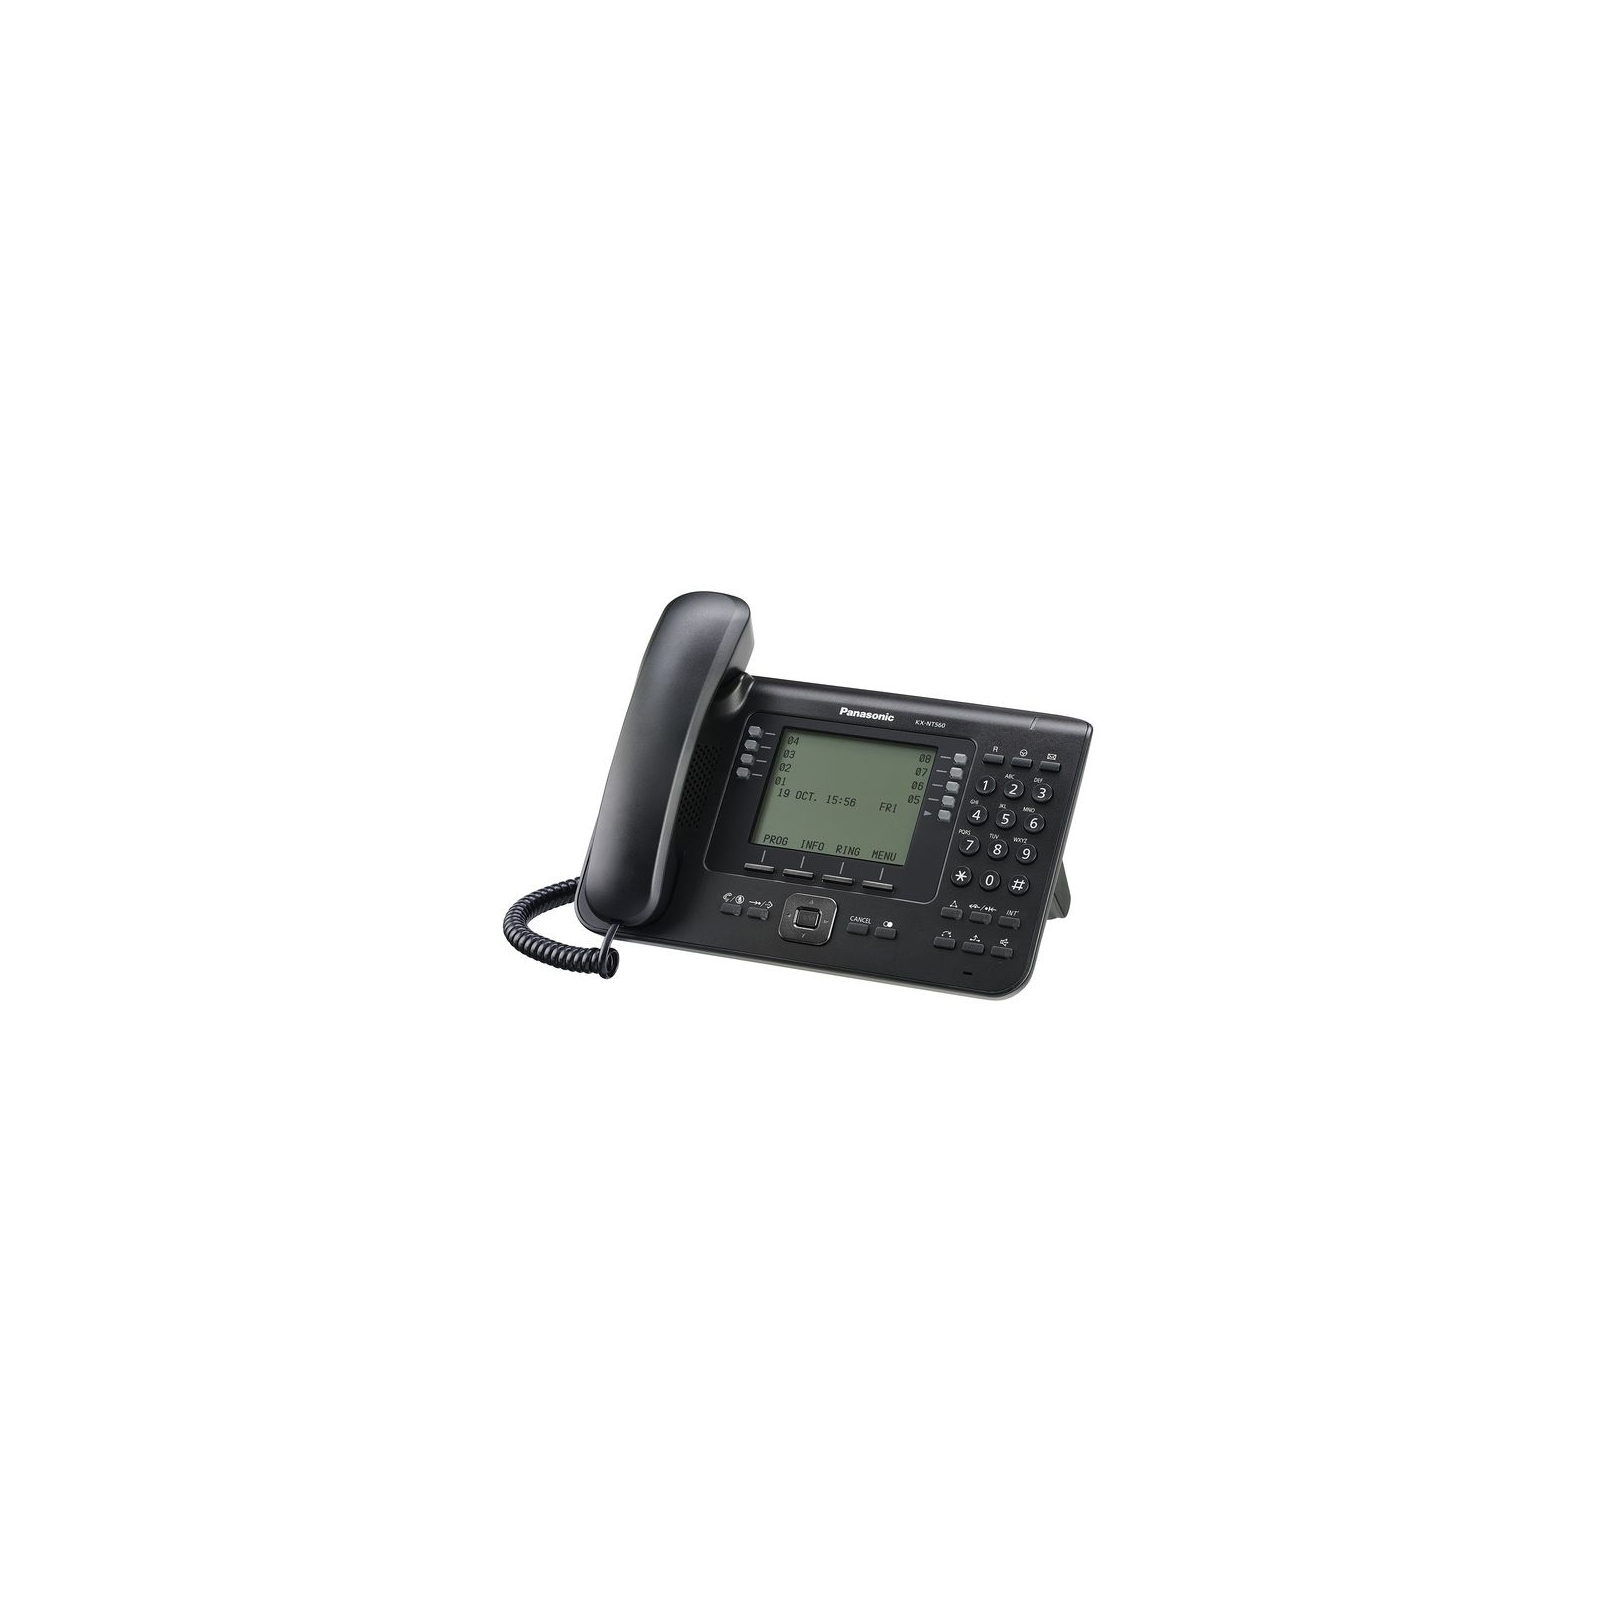 IP телефон Panasonic KX-NT560RU-B